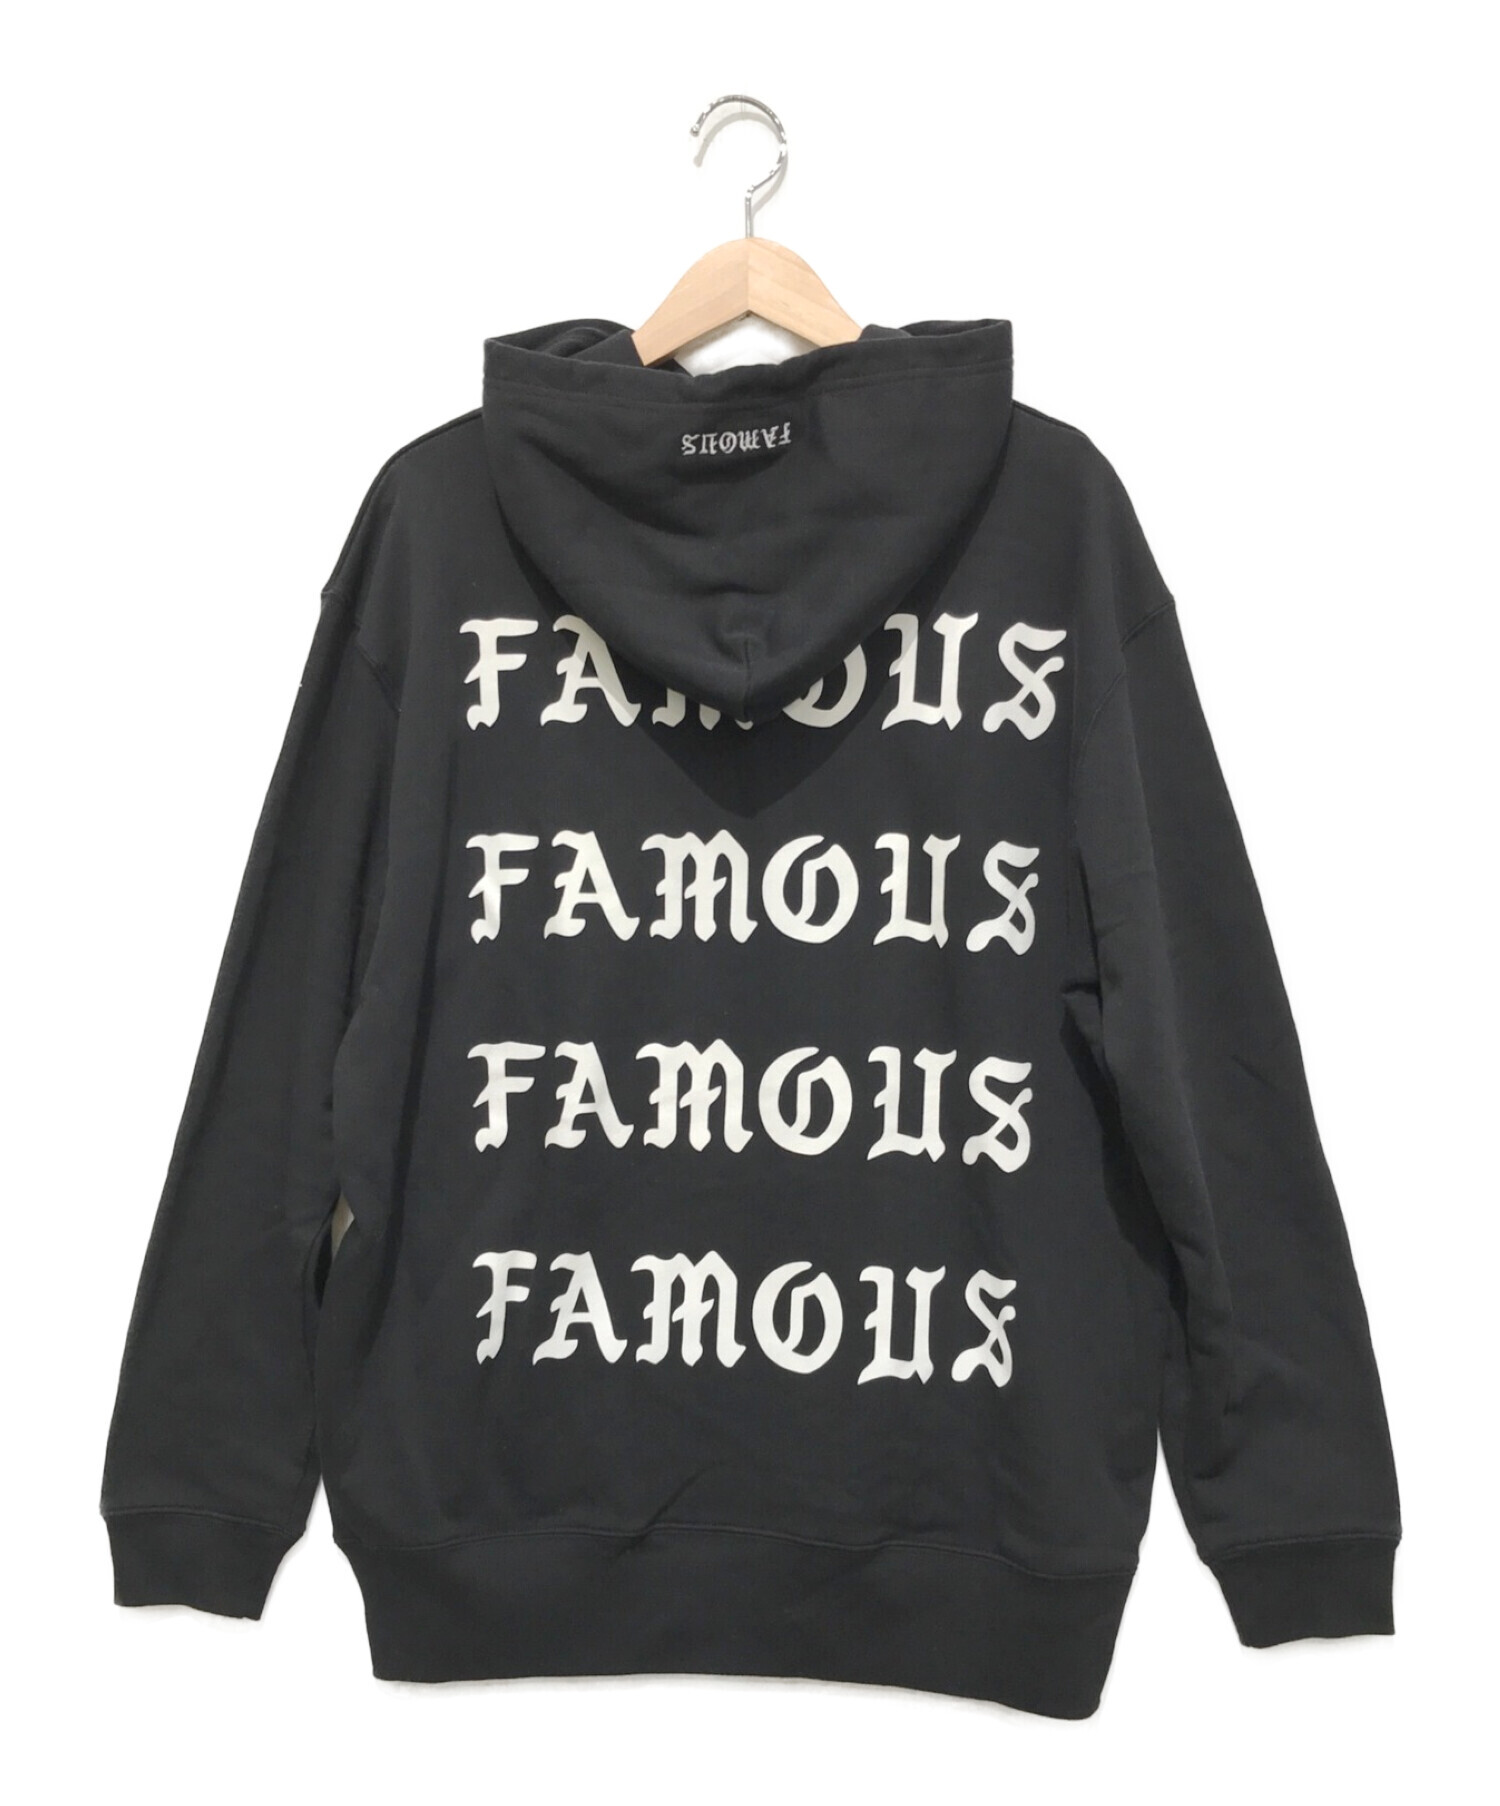 WORLD wide FAMOUS ワールドワイドフェイマス - Tシャツ/カットソー 